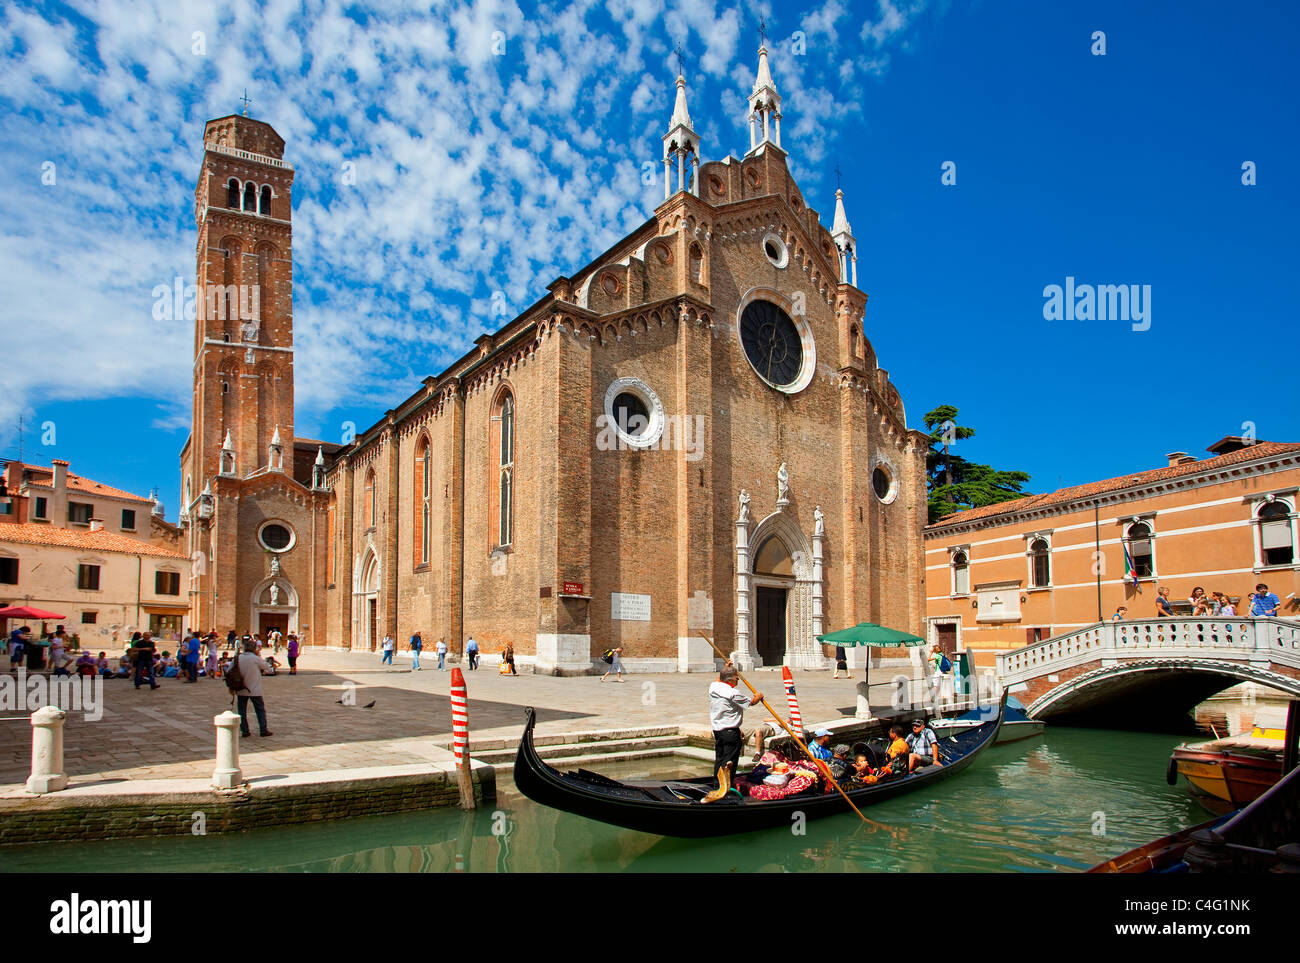 Venecia, Santa Maria Gloriosa dei Frari Foto de stock